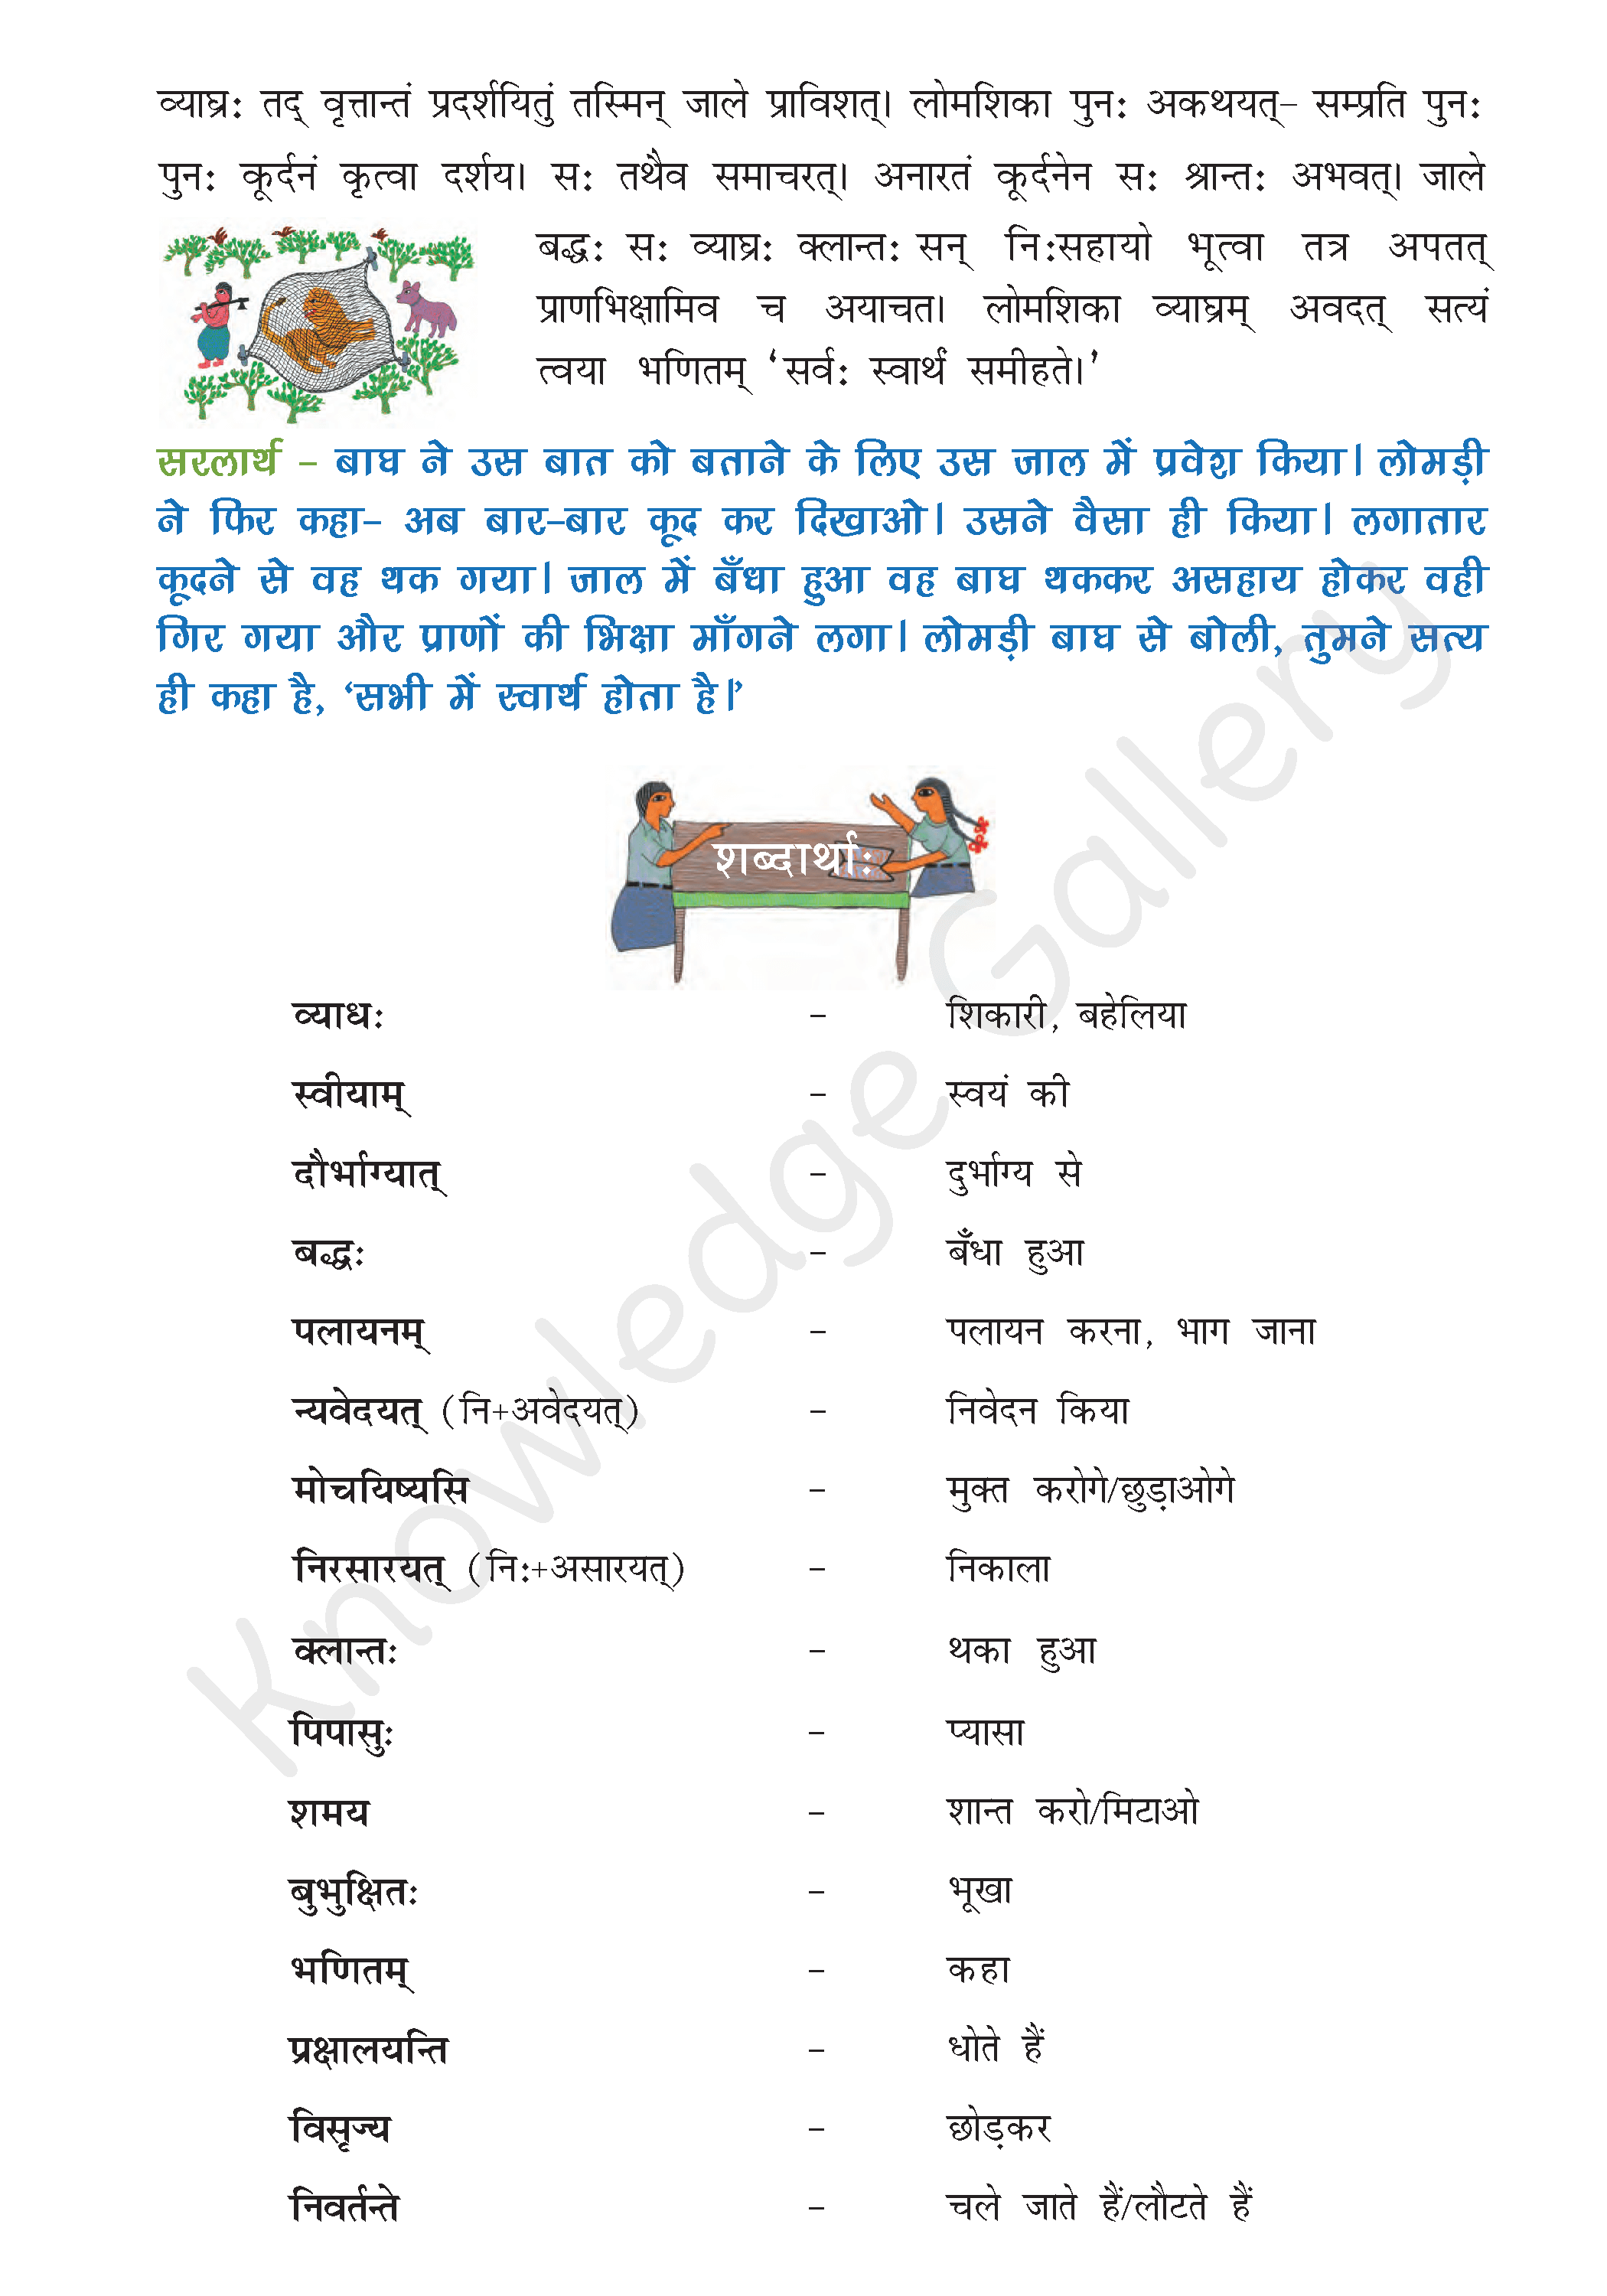 NCERT Solution For Class 8 Sanskrit Chapter 5 part 3